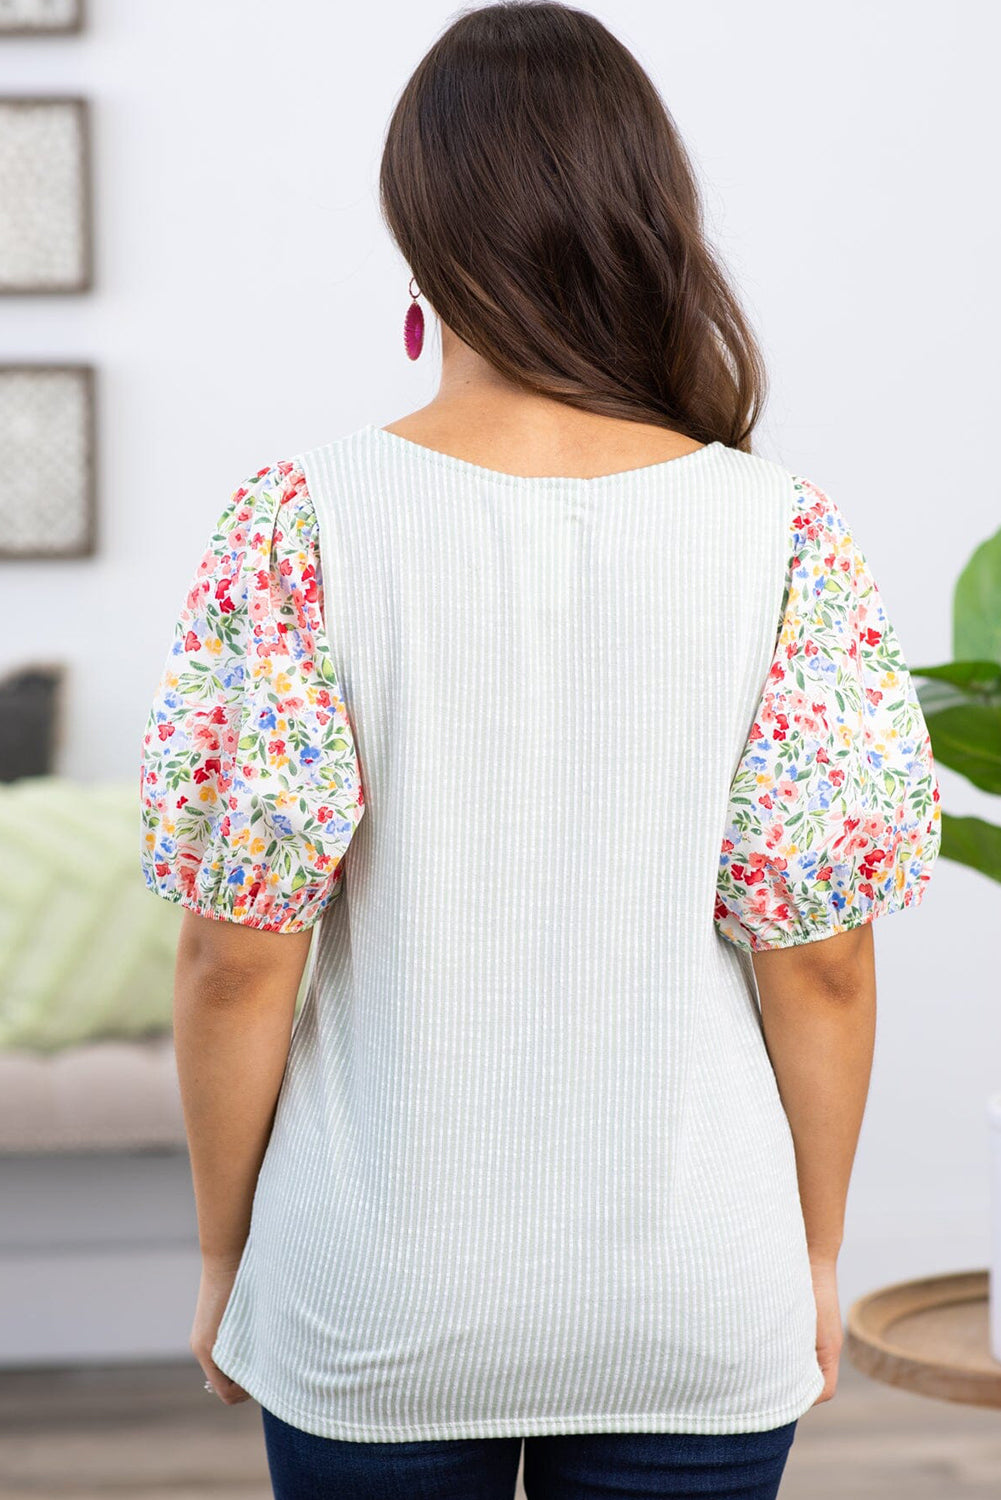 Bela pletena bluza velike velikosti s cvetličnim napihnjenim rokavom in rebrastim kontrastom